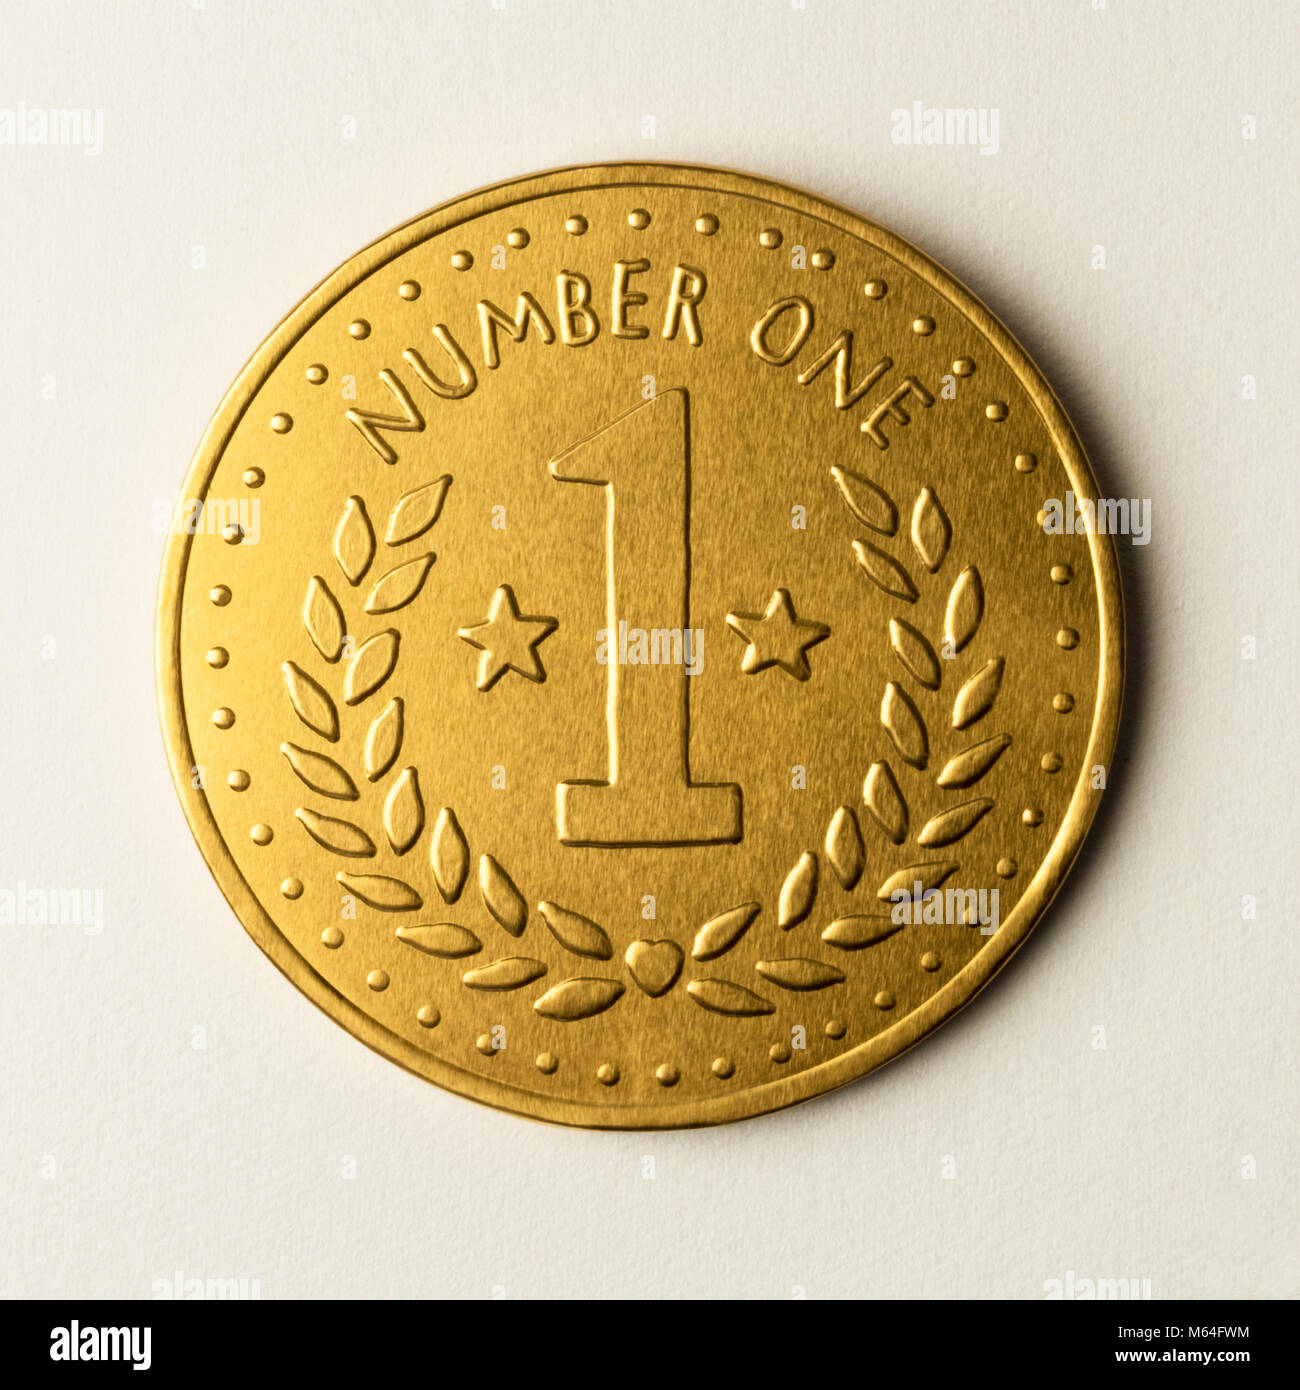 Gold Nummer eins Medaille Münze, Metall Schokolade Währung, für die erste Klasse, Freund, Familie, Mutter, Vater, Schwester, Bruder, Partner, Ehepartner Sieger Stockfoto